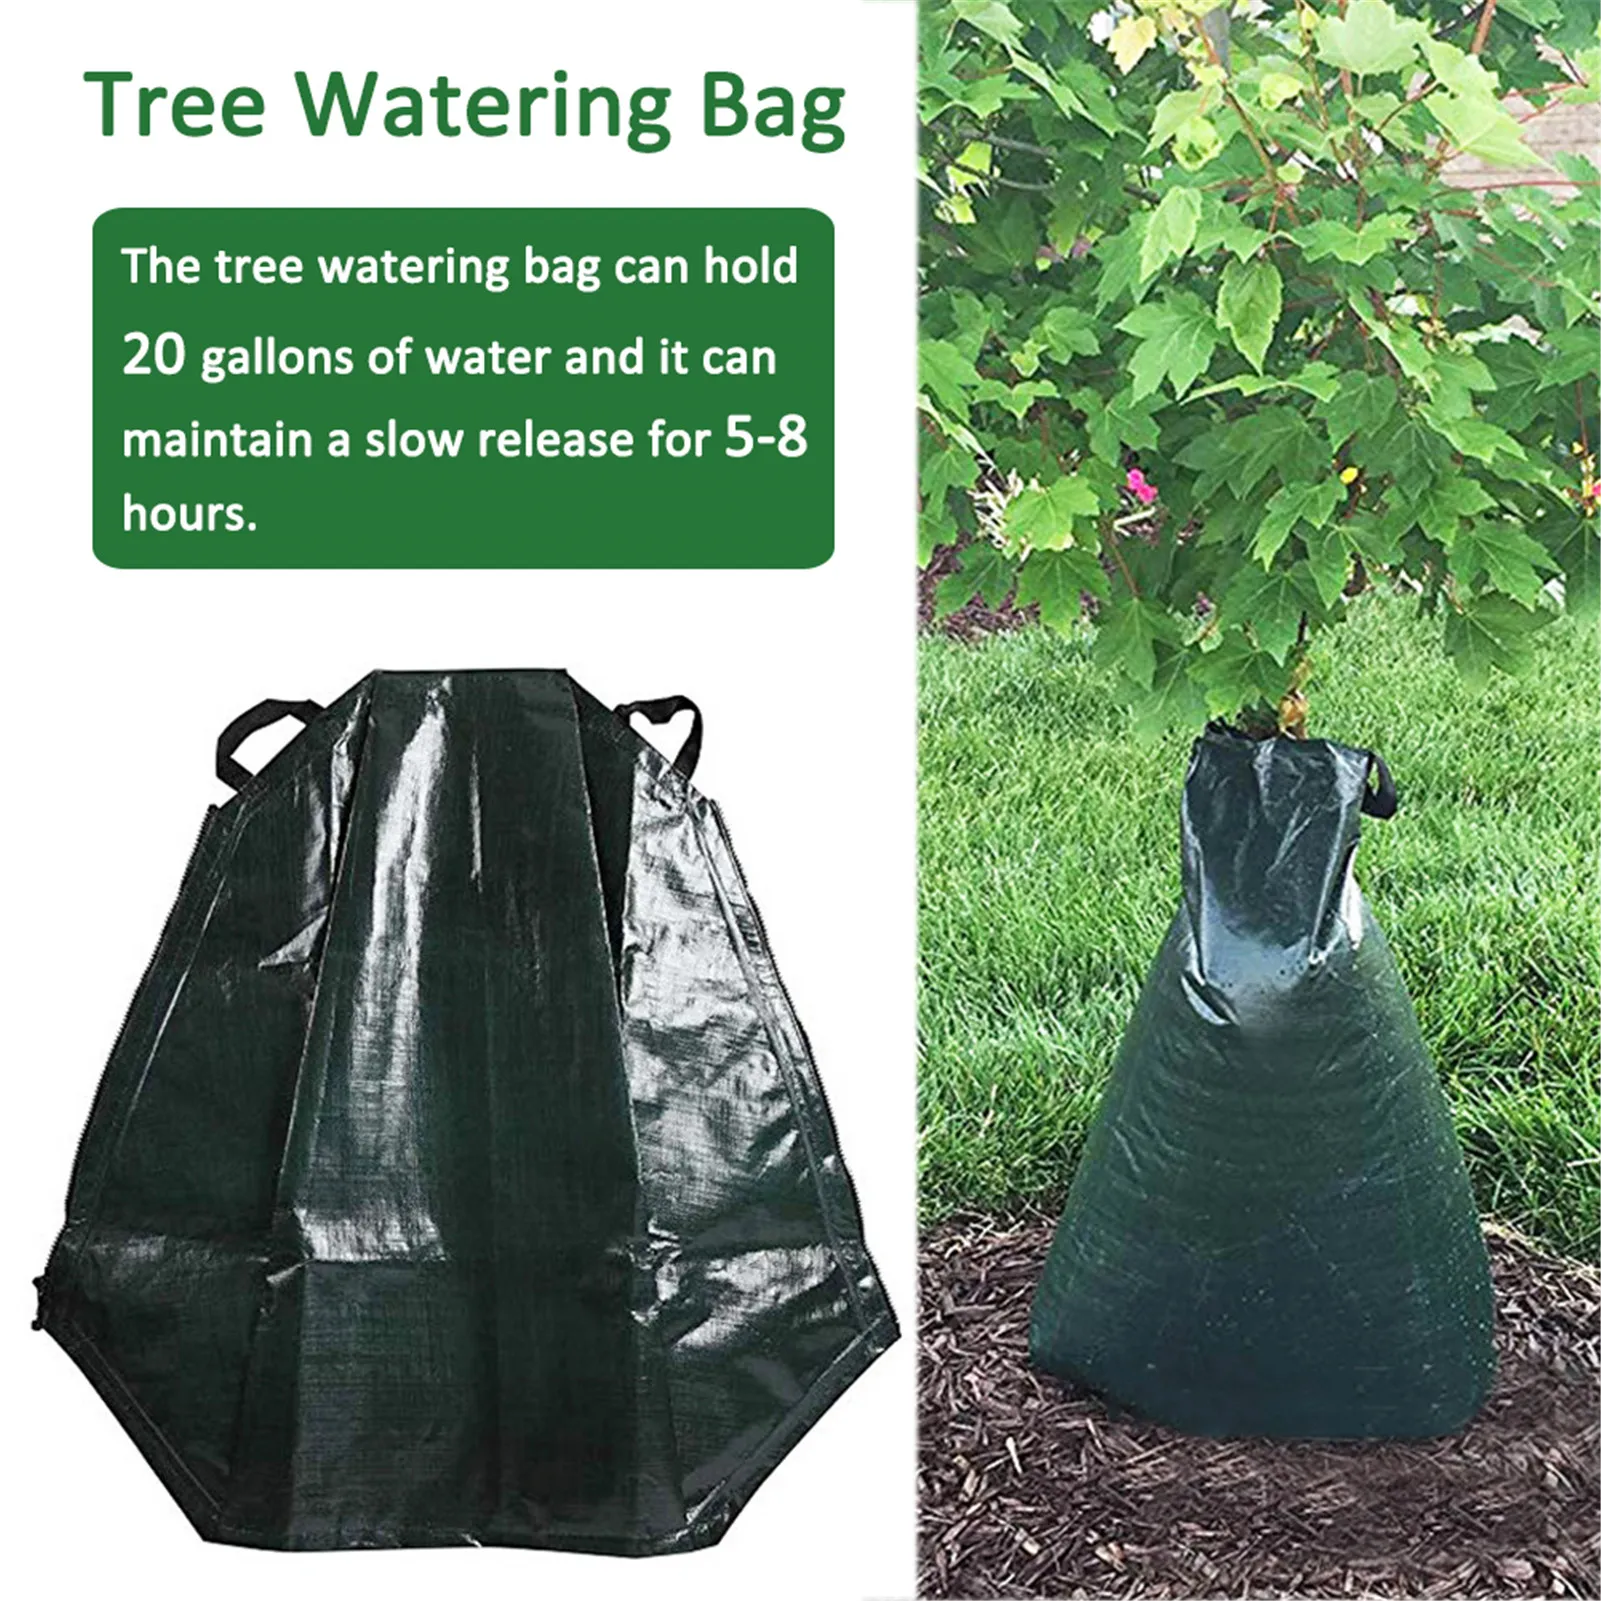 

Мешок для полива деревьев, медленно оросительный мешок темно-зеленого цвета, 20 галлонов, 5-8 часов орошения